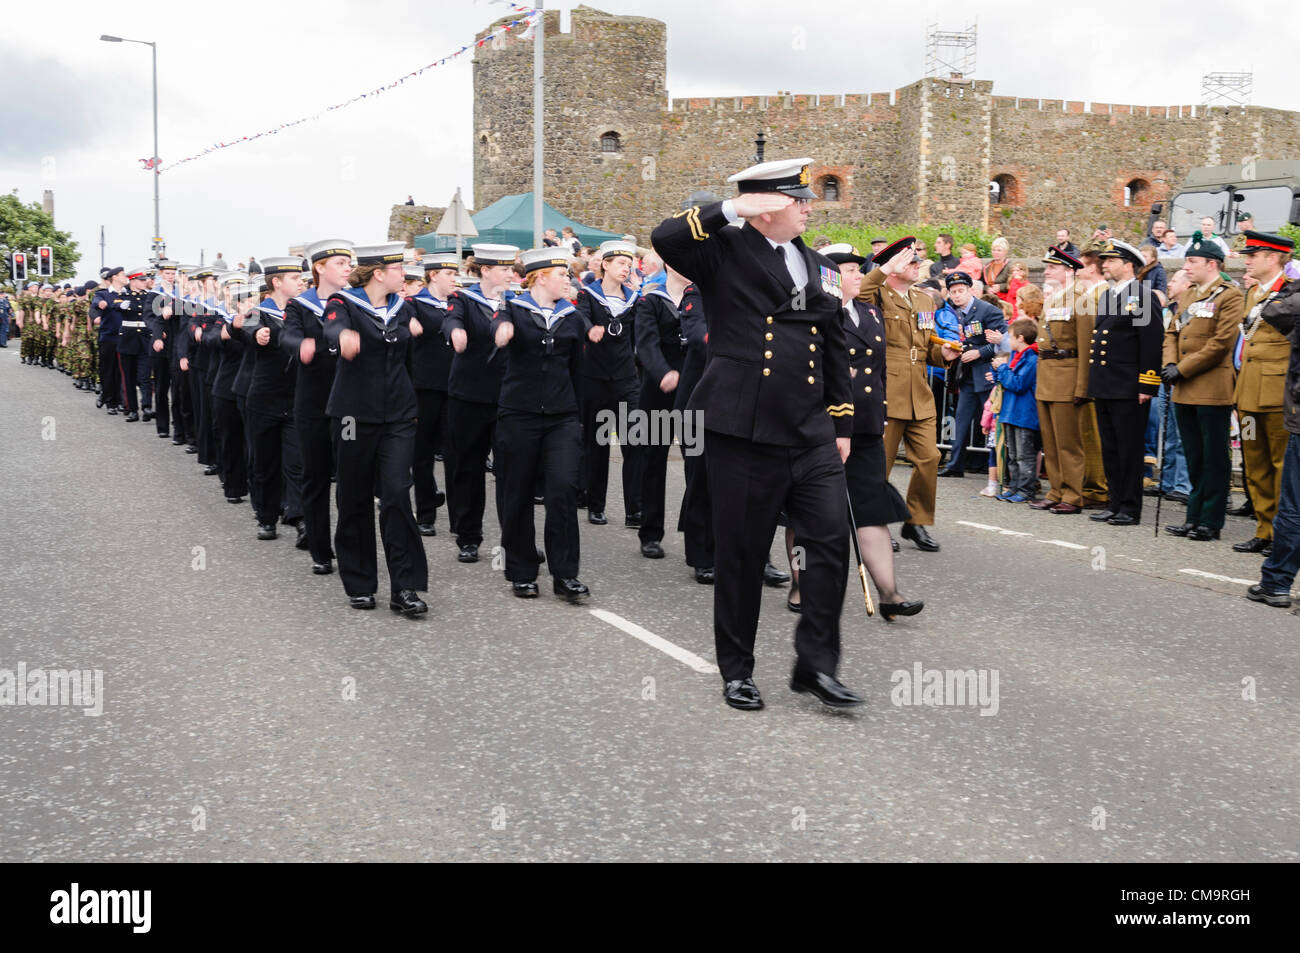 Carrickfergus, 30/06/2012 - Journée des Forces armées. Les Cadets de la parade passé les dignitaires Banque D'Images